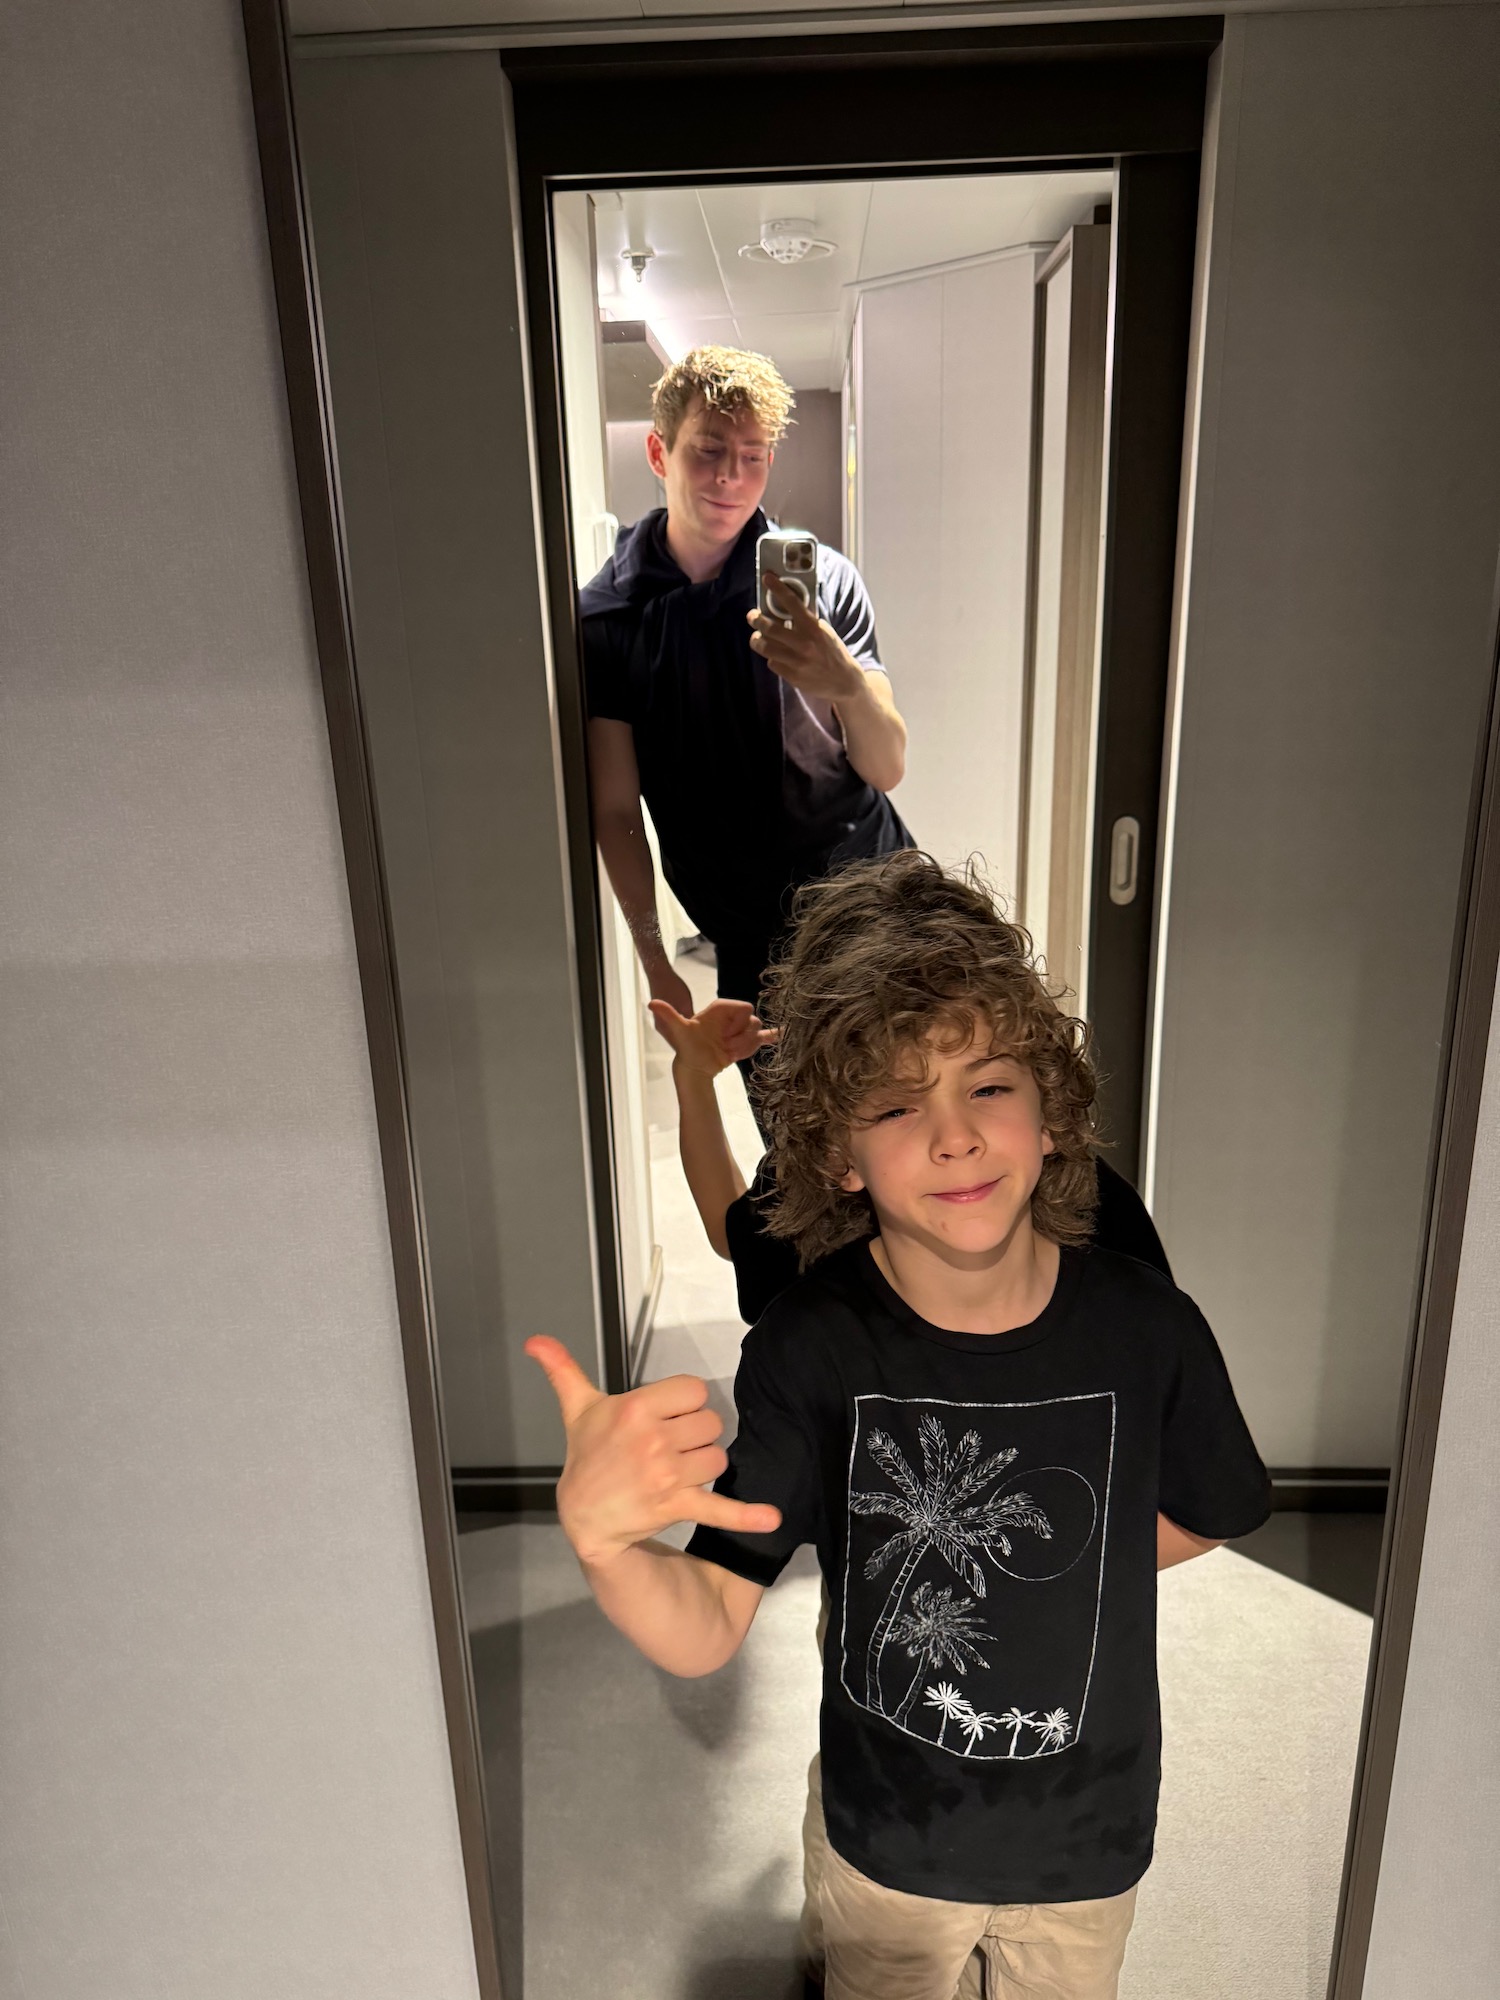 a boy taking a selfie in a mirror